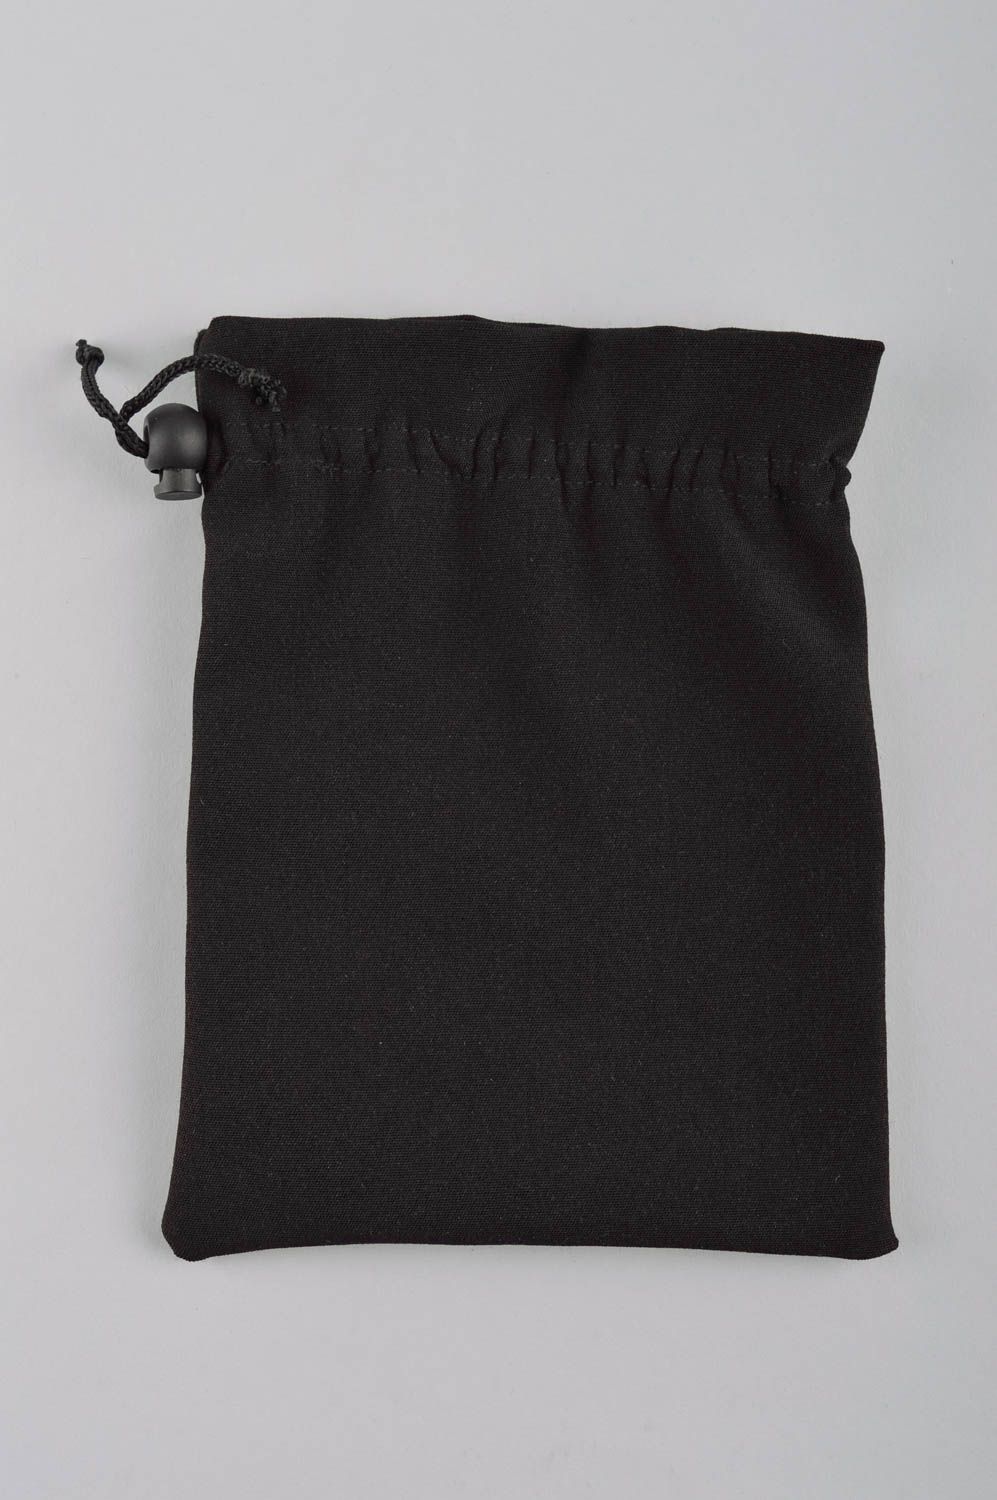 Мешочек для монет черный ручной работы кошелек из ткани женский кошелек стильный фото 3